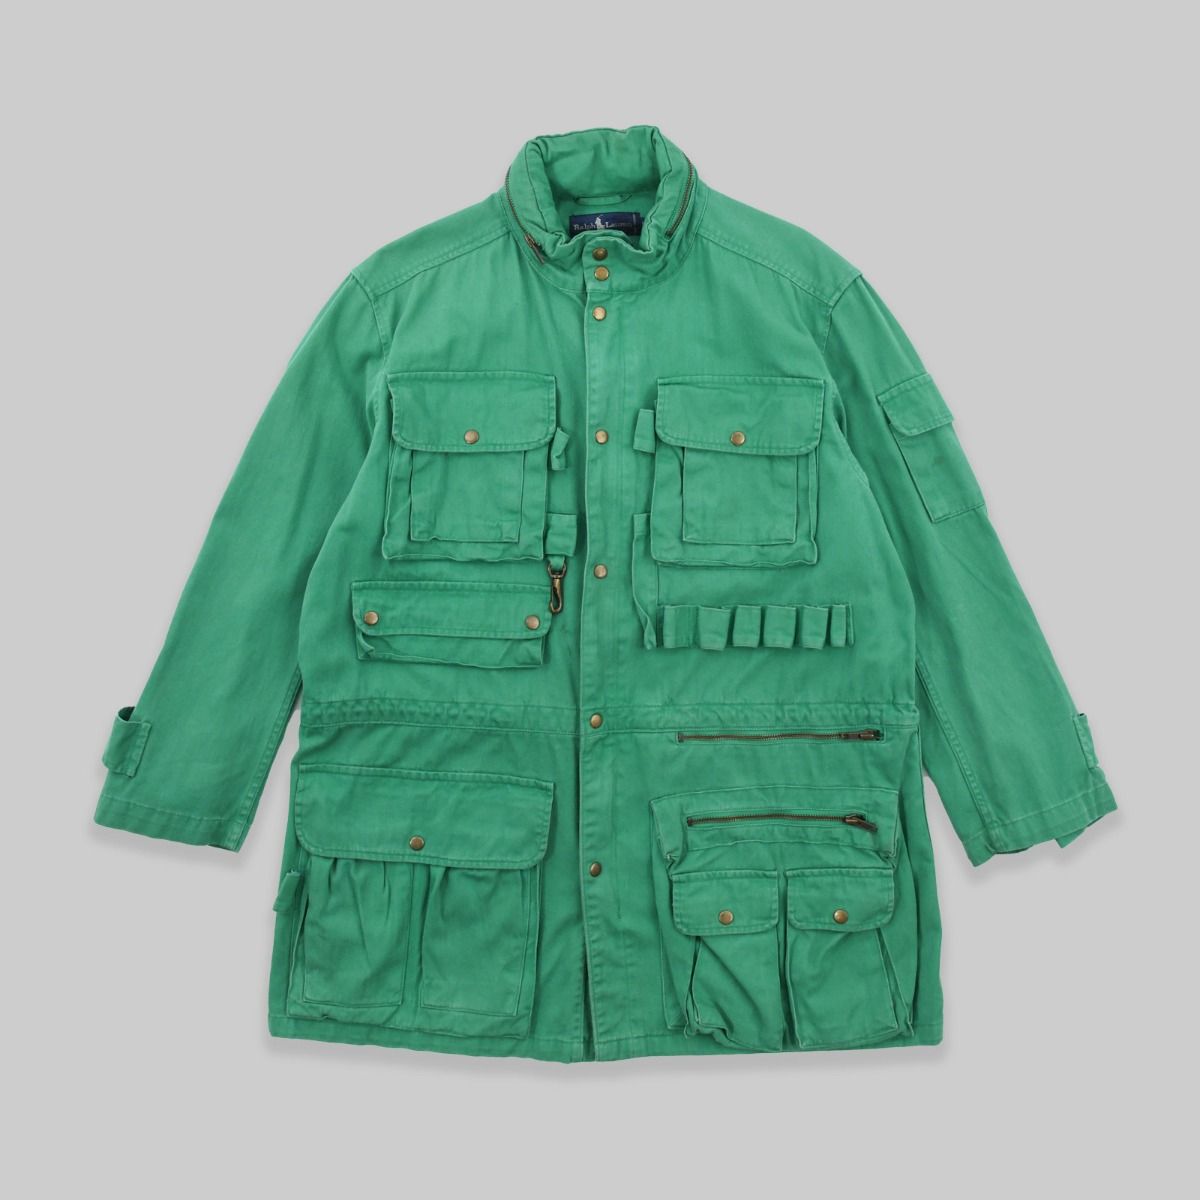 Polo Ralph Lauren Adirondack Utility Jacket